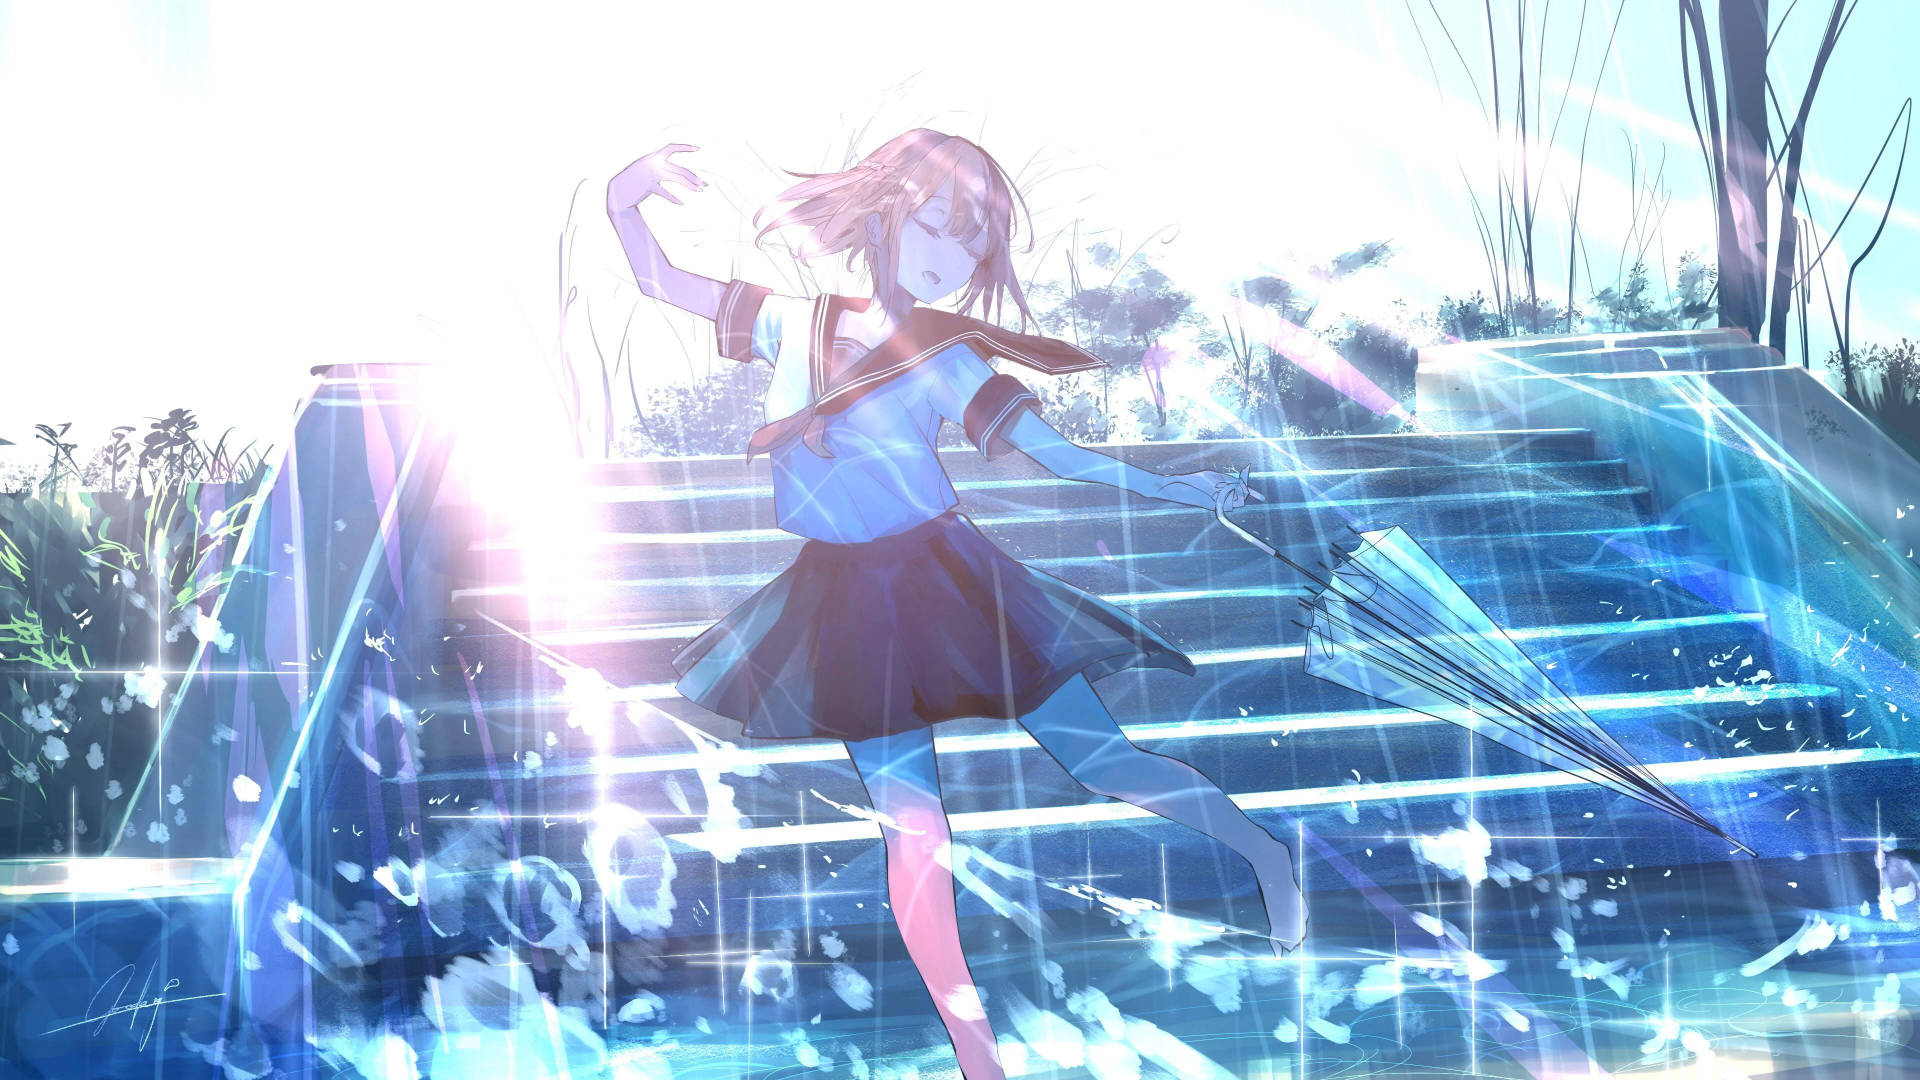 School Girl Anime Dance In Rain Background